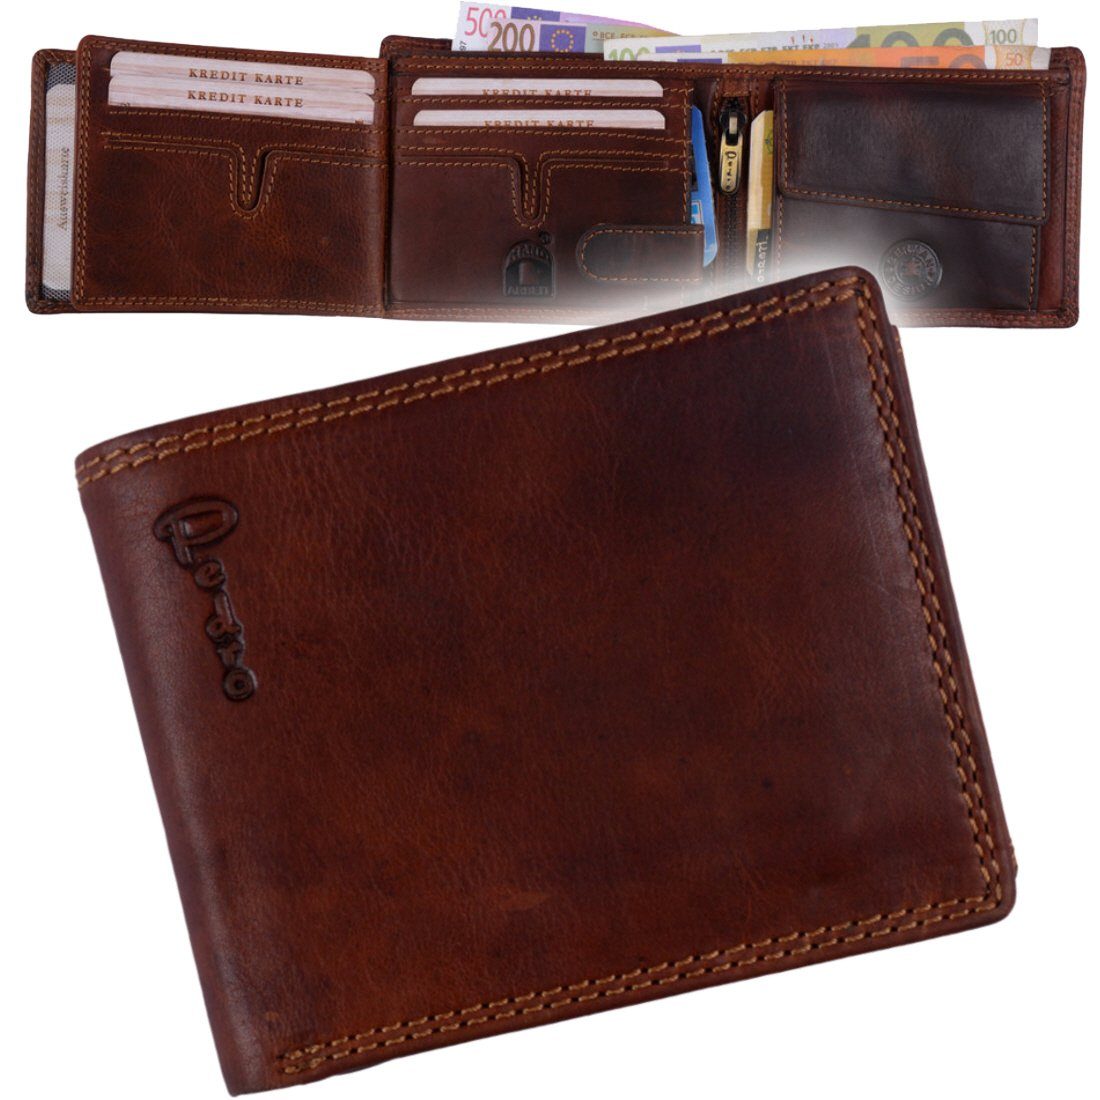 Männerbörse Leder Schutz RFID Münzfach SHG Lederbörse Herren Brieftasche mit Portemonnaie, Geldbörse Börse Büffelleder